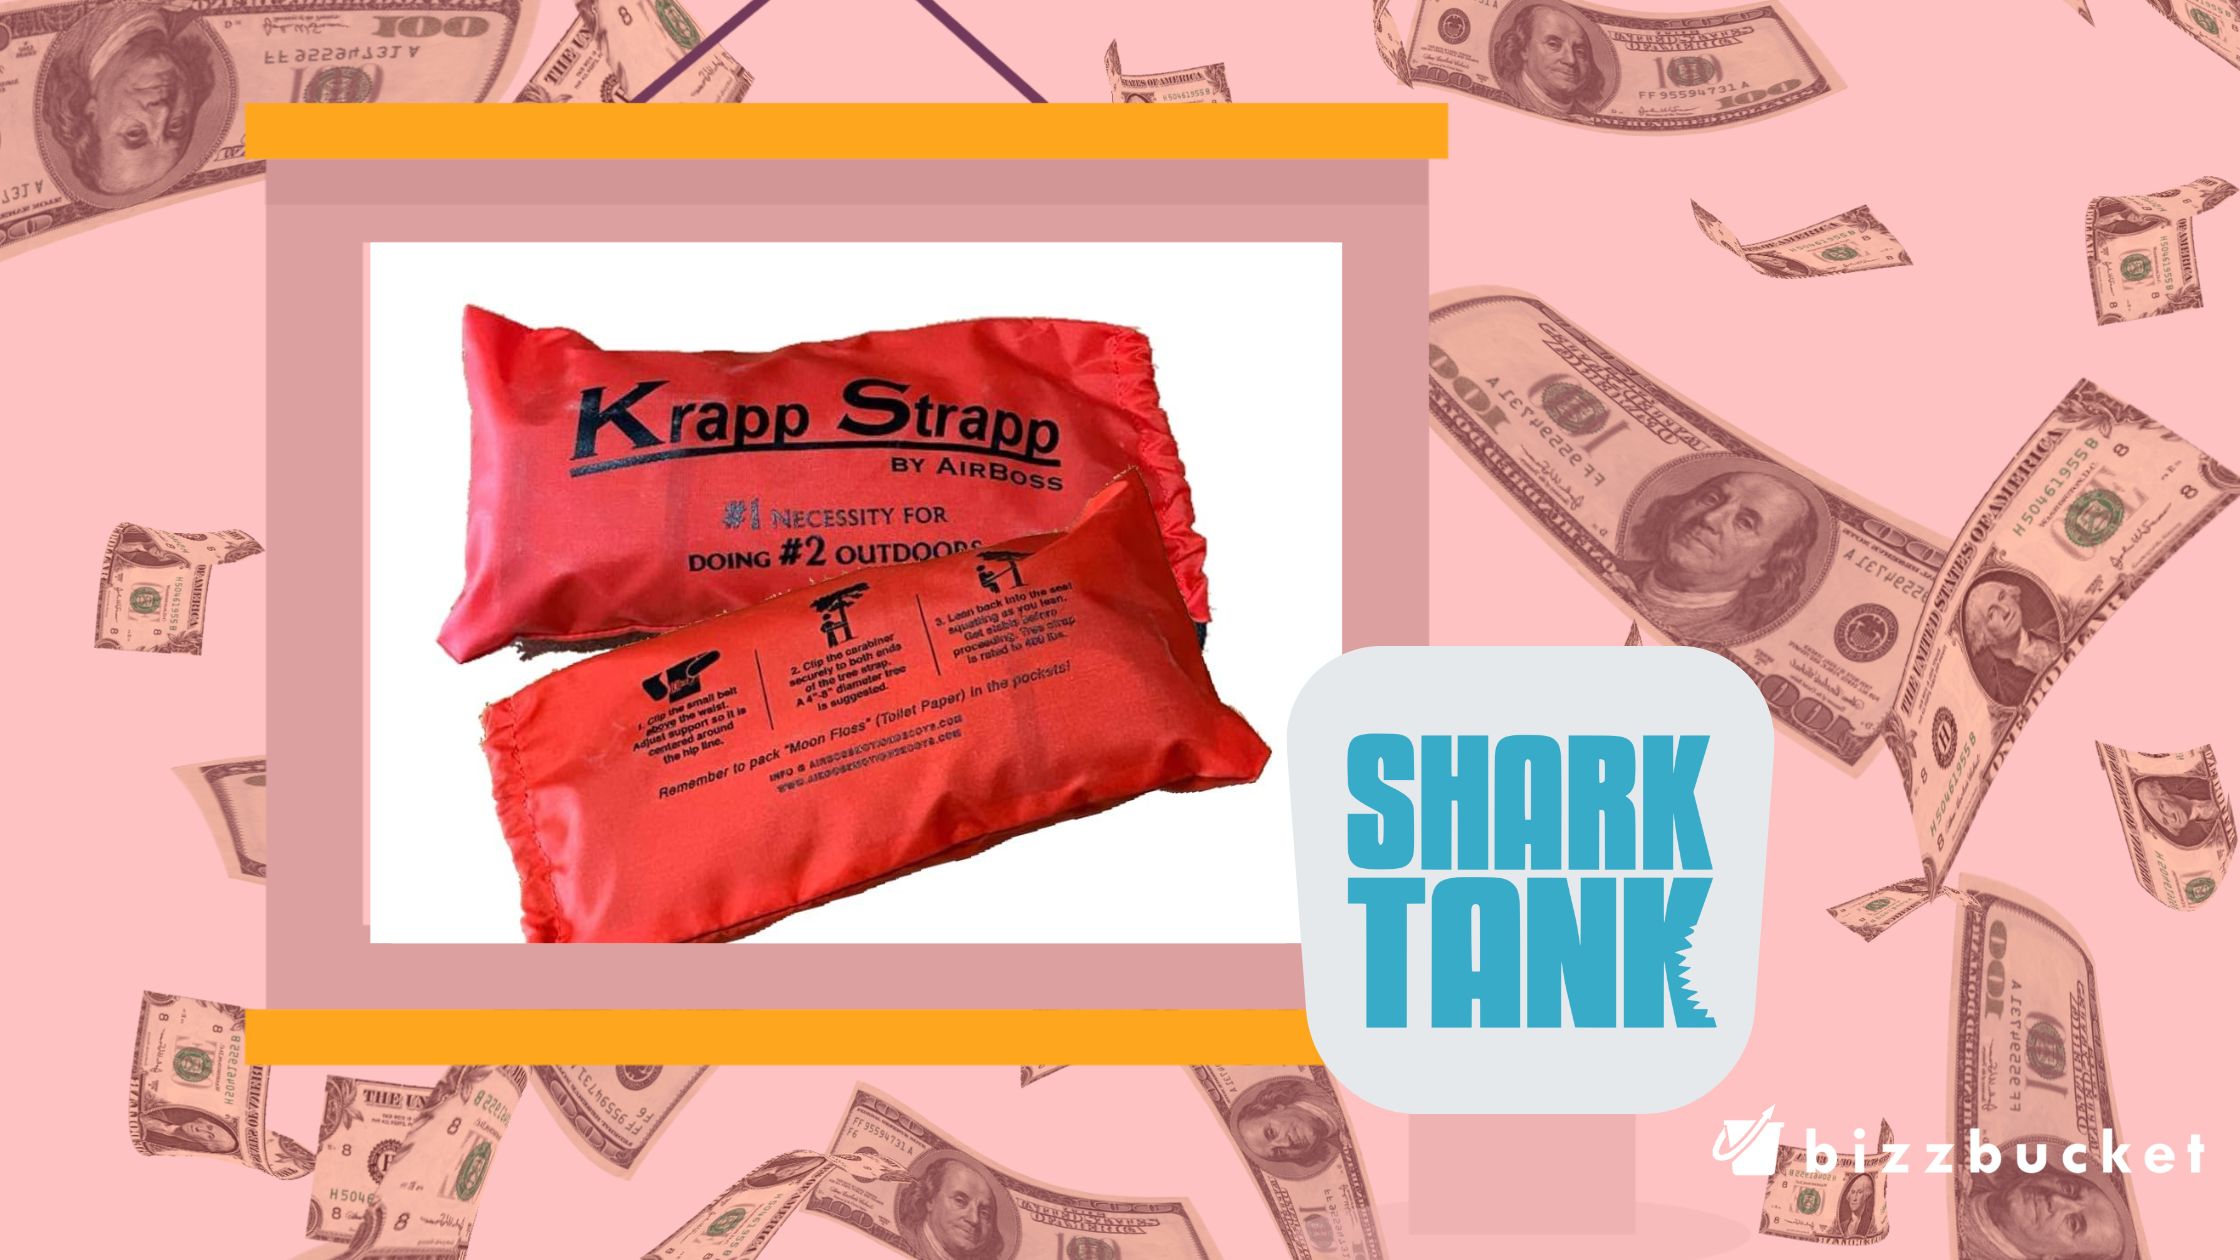 Krapp Strapp shark tank